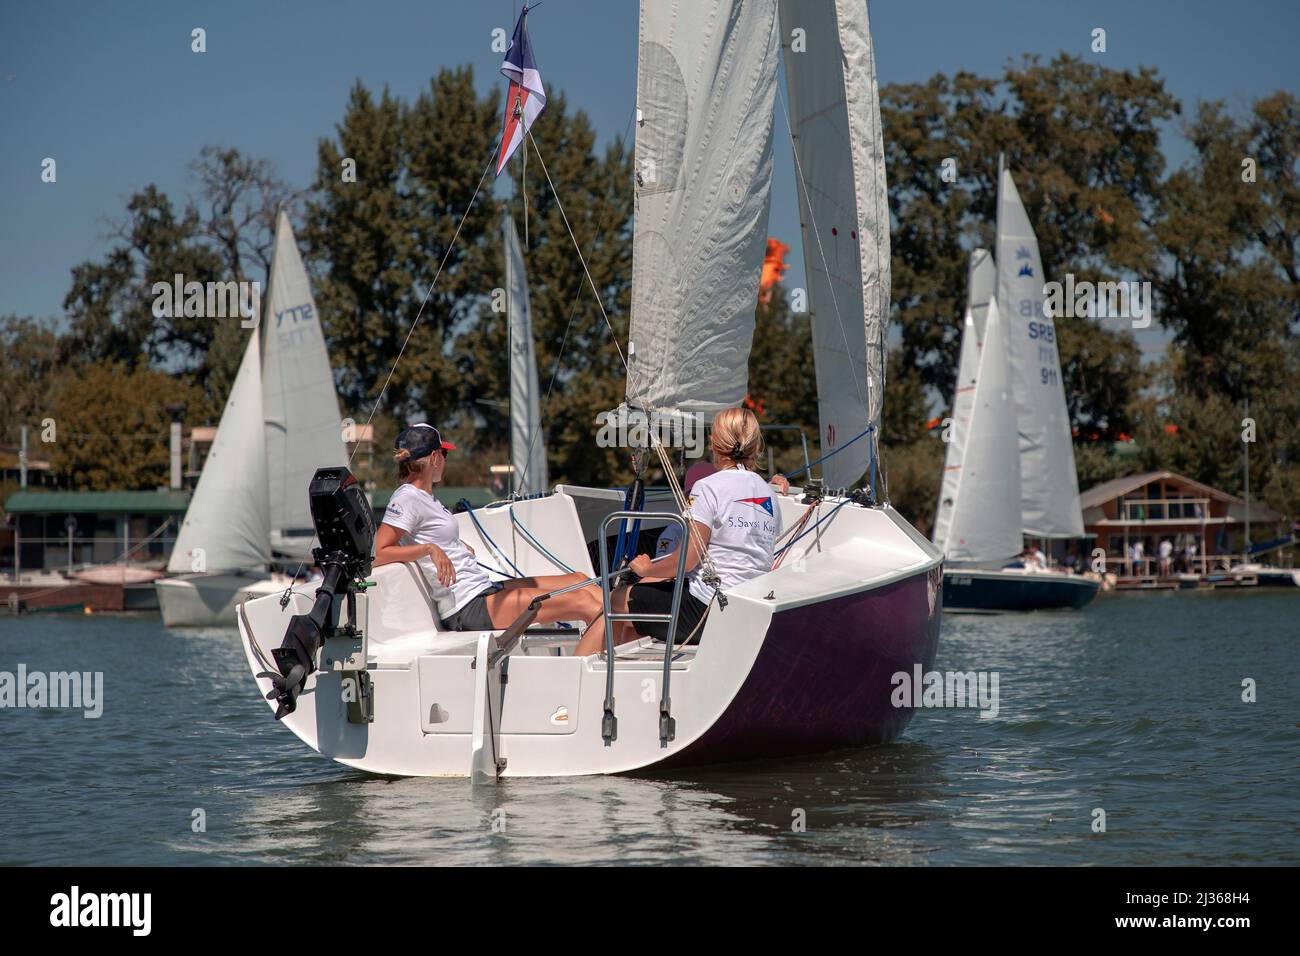 Belgrade, Serbia, Aug 18, 2019: All-female crew competing in Micro Class sailing regatta on Sava River Stock Photo